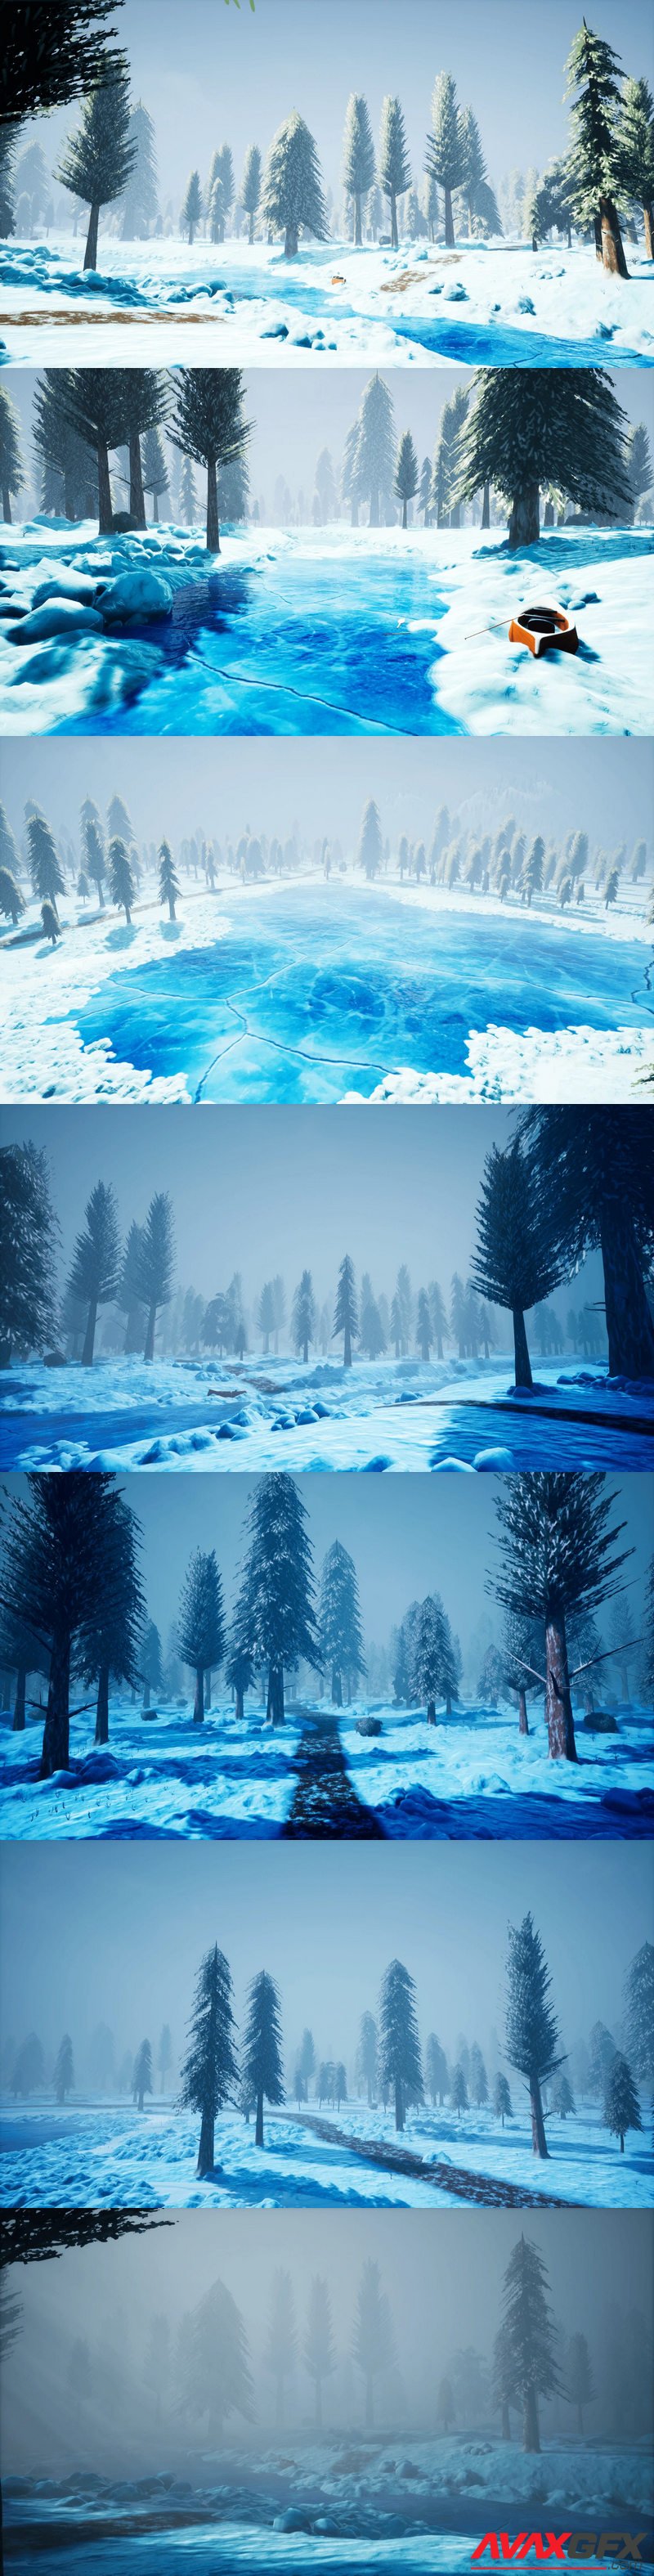 Stylized Snowy Forest